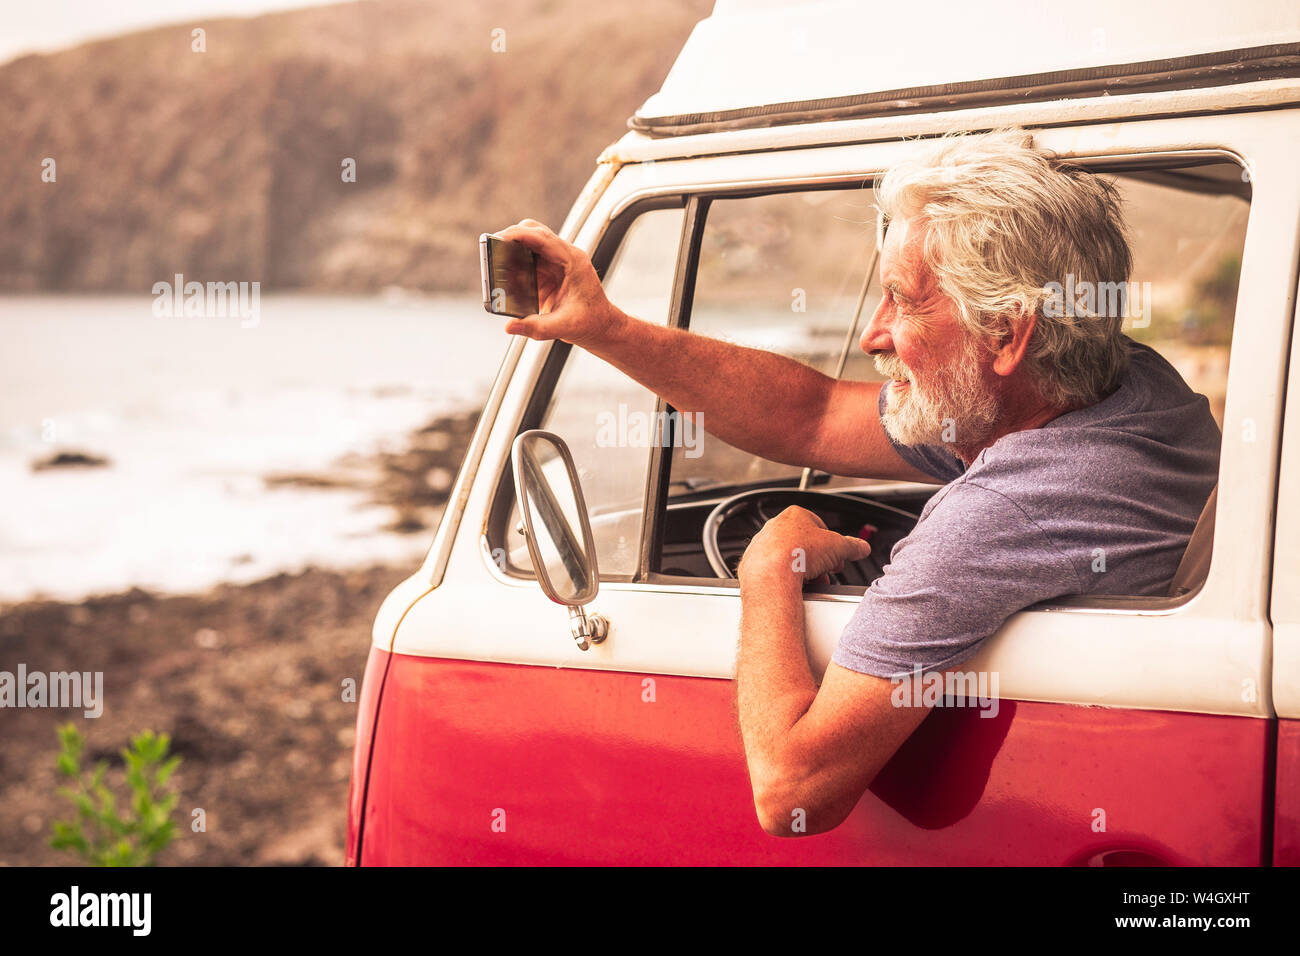 Hauts homme voyageant dans un van vinatge, prendre des photos de la mer Banque D'Images